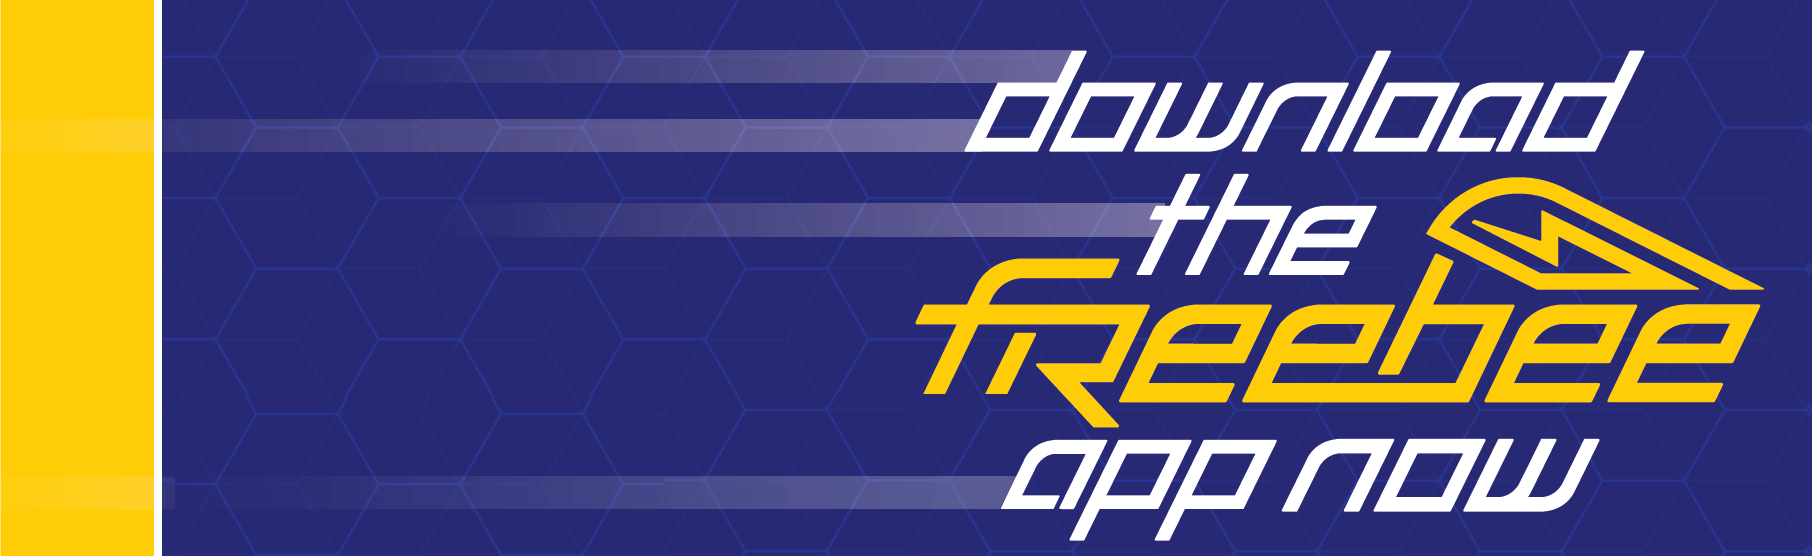 Freebee App Graphic